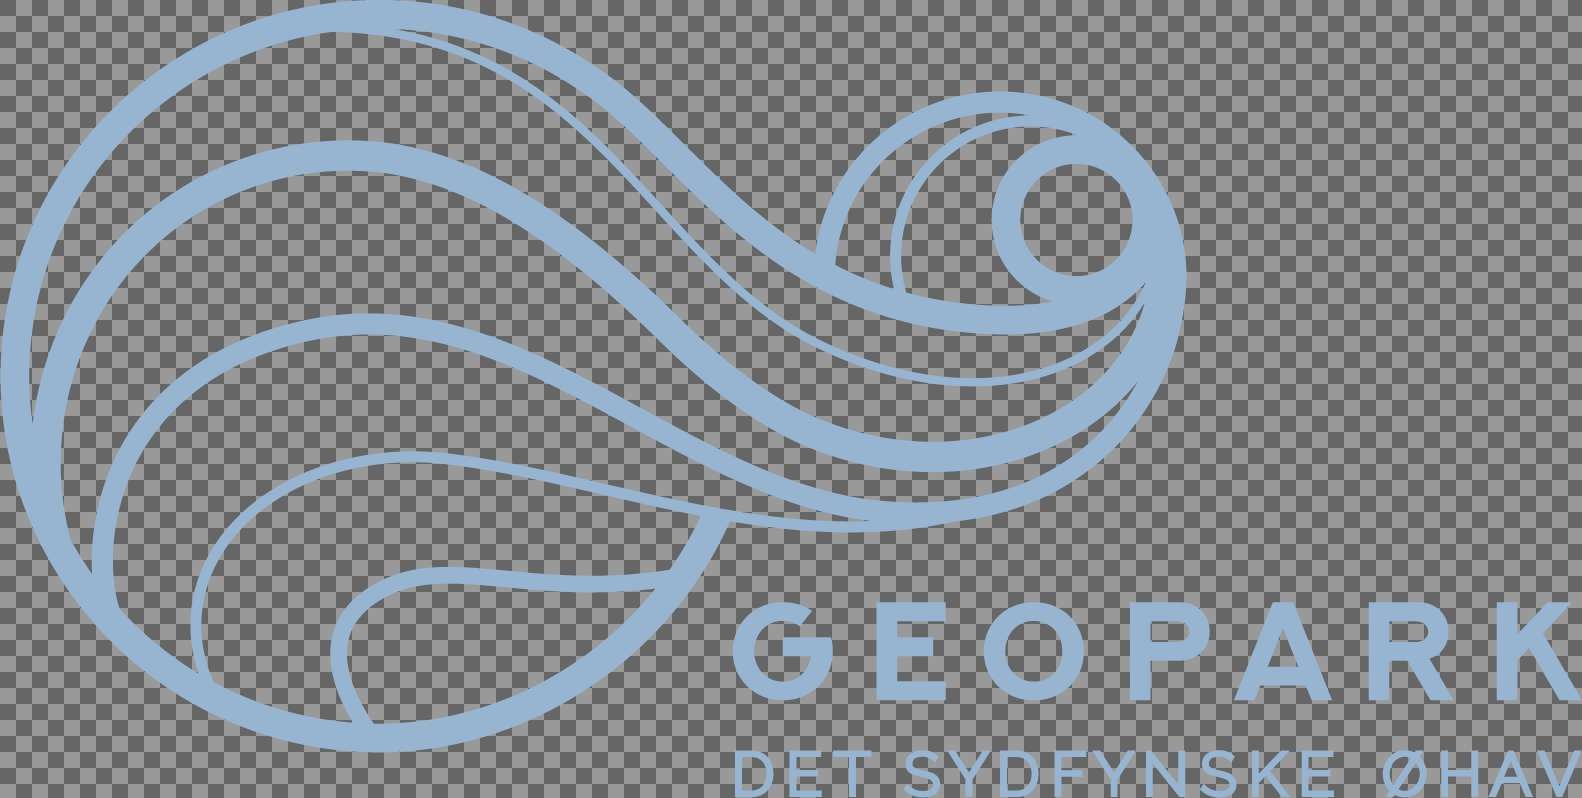 geopark logo normal 0921 lys blaa